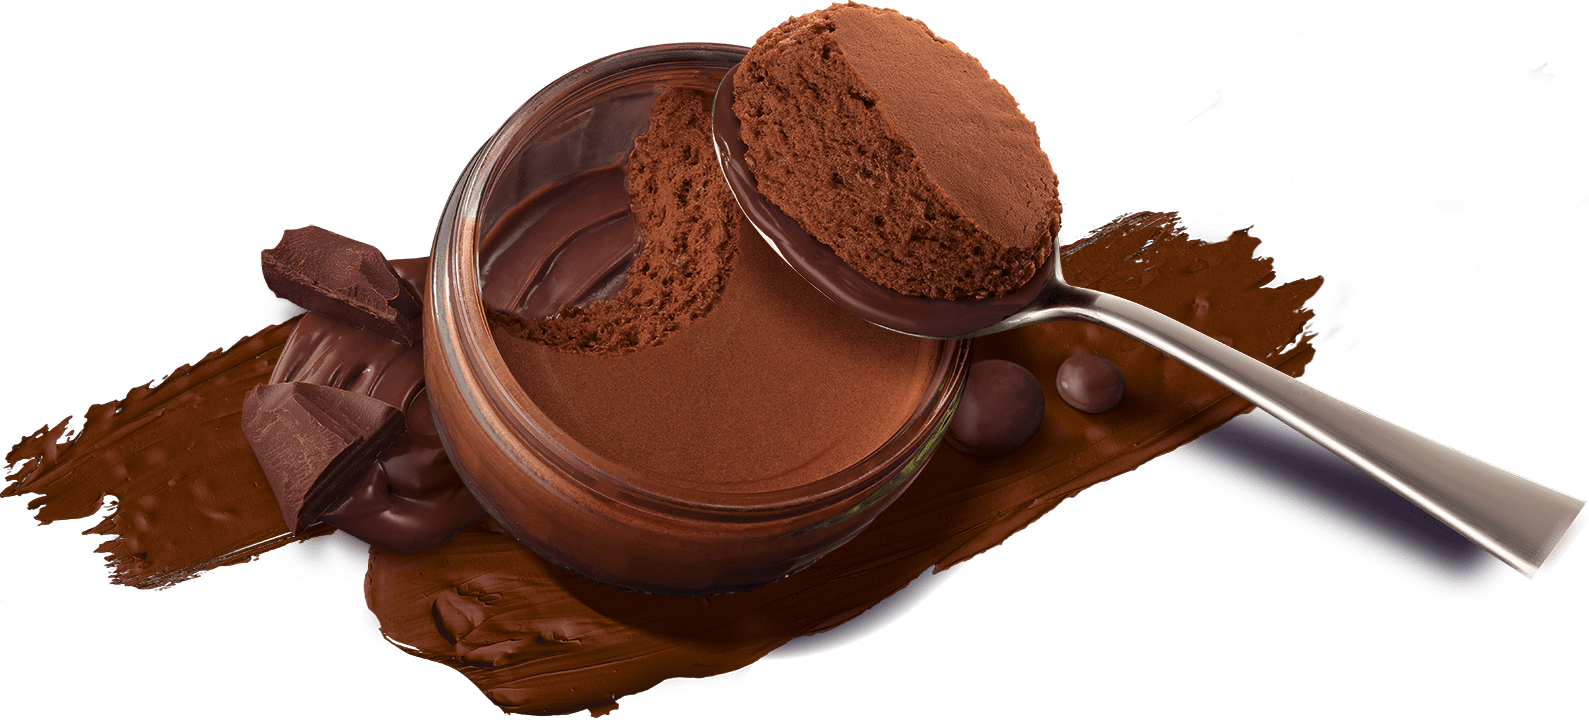 gu dark chocolate with ganache mousse